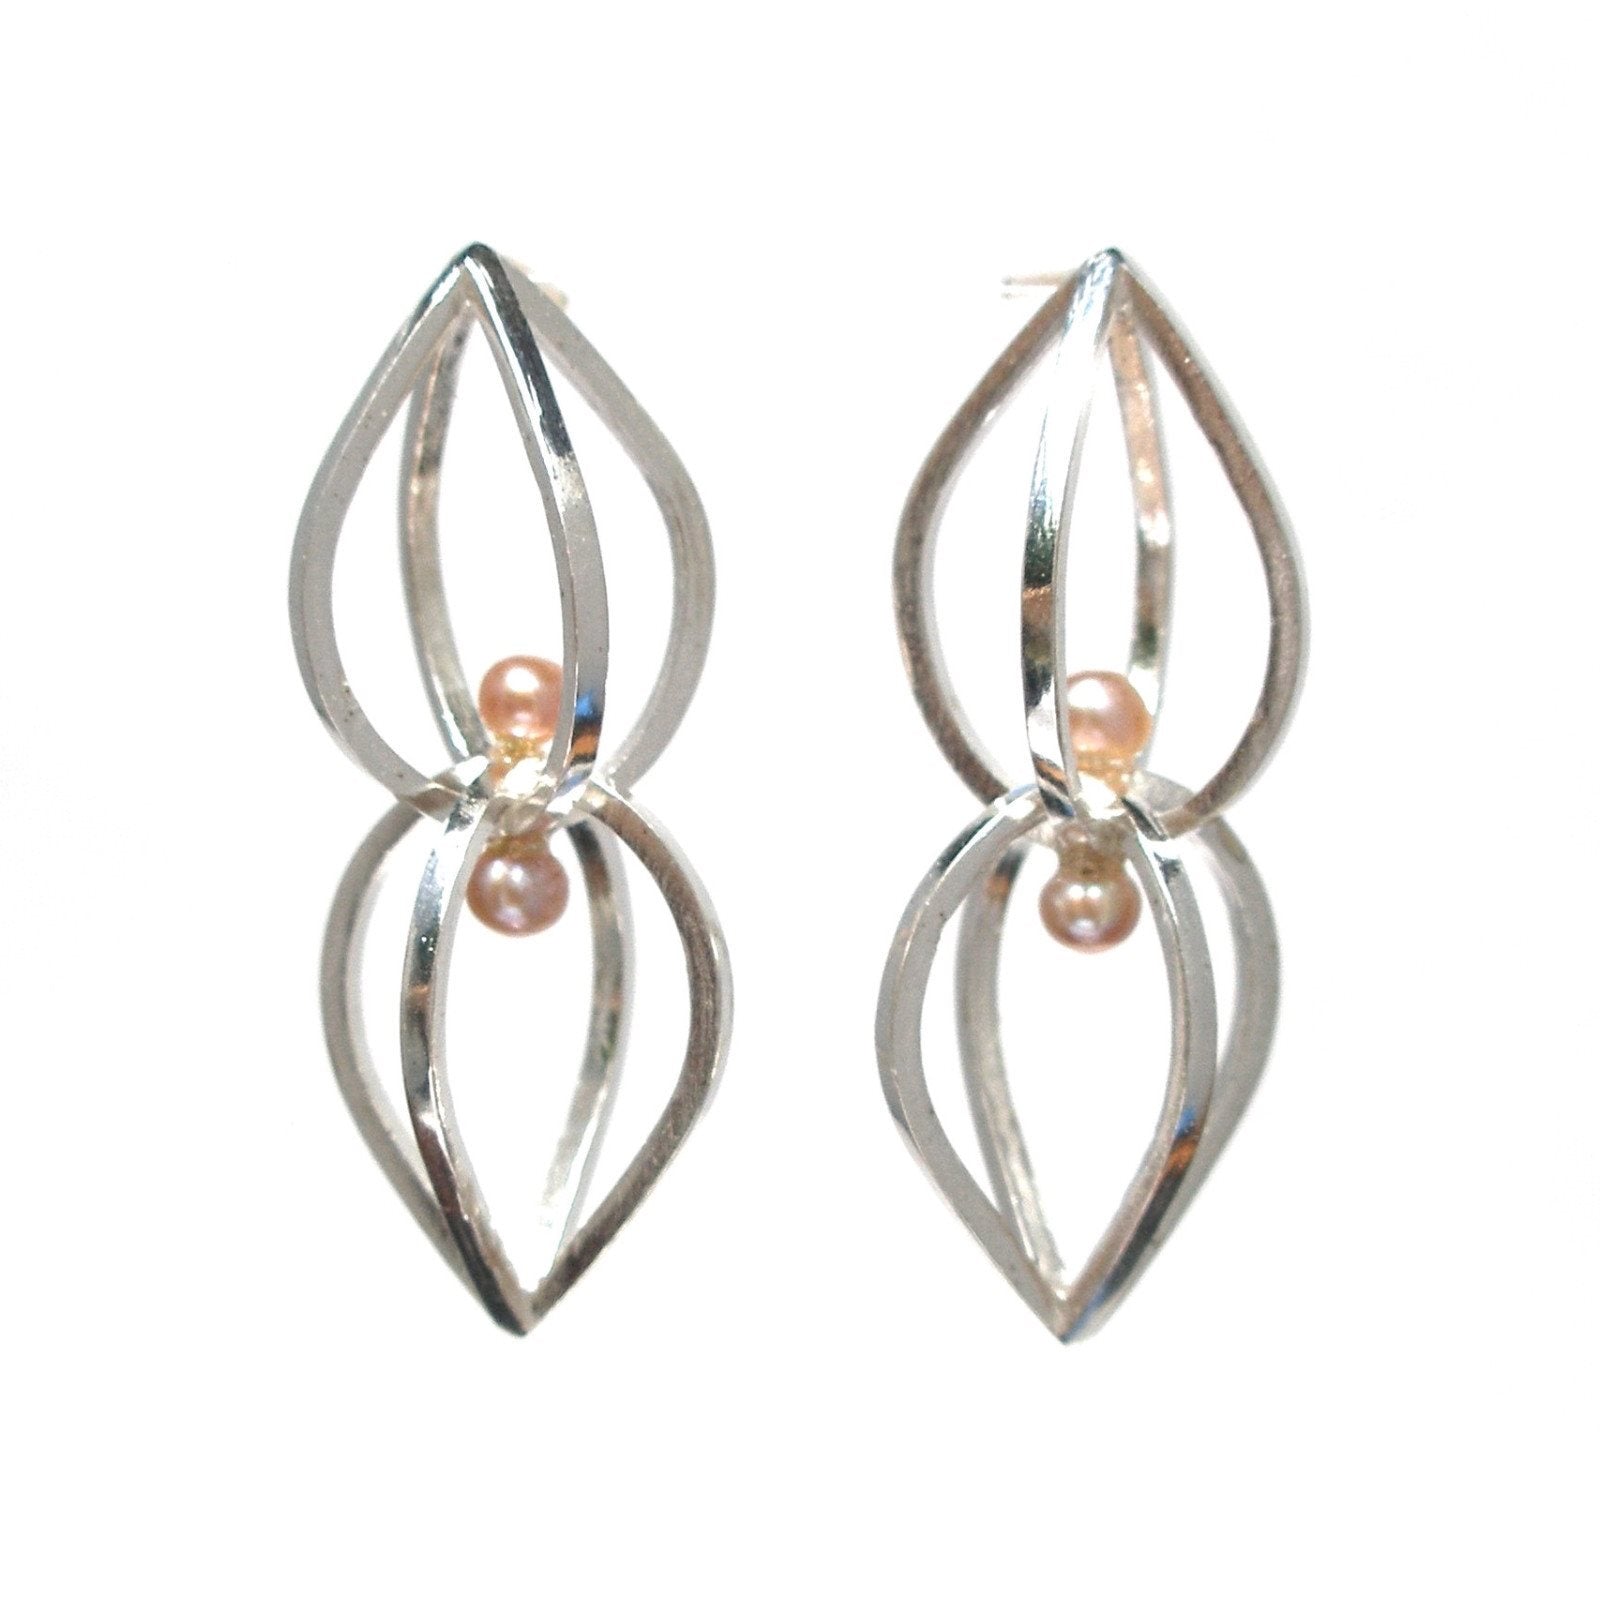 Seed Earrings in Sterling Silver, Pink Pearls